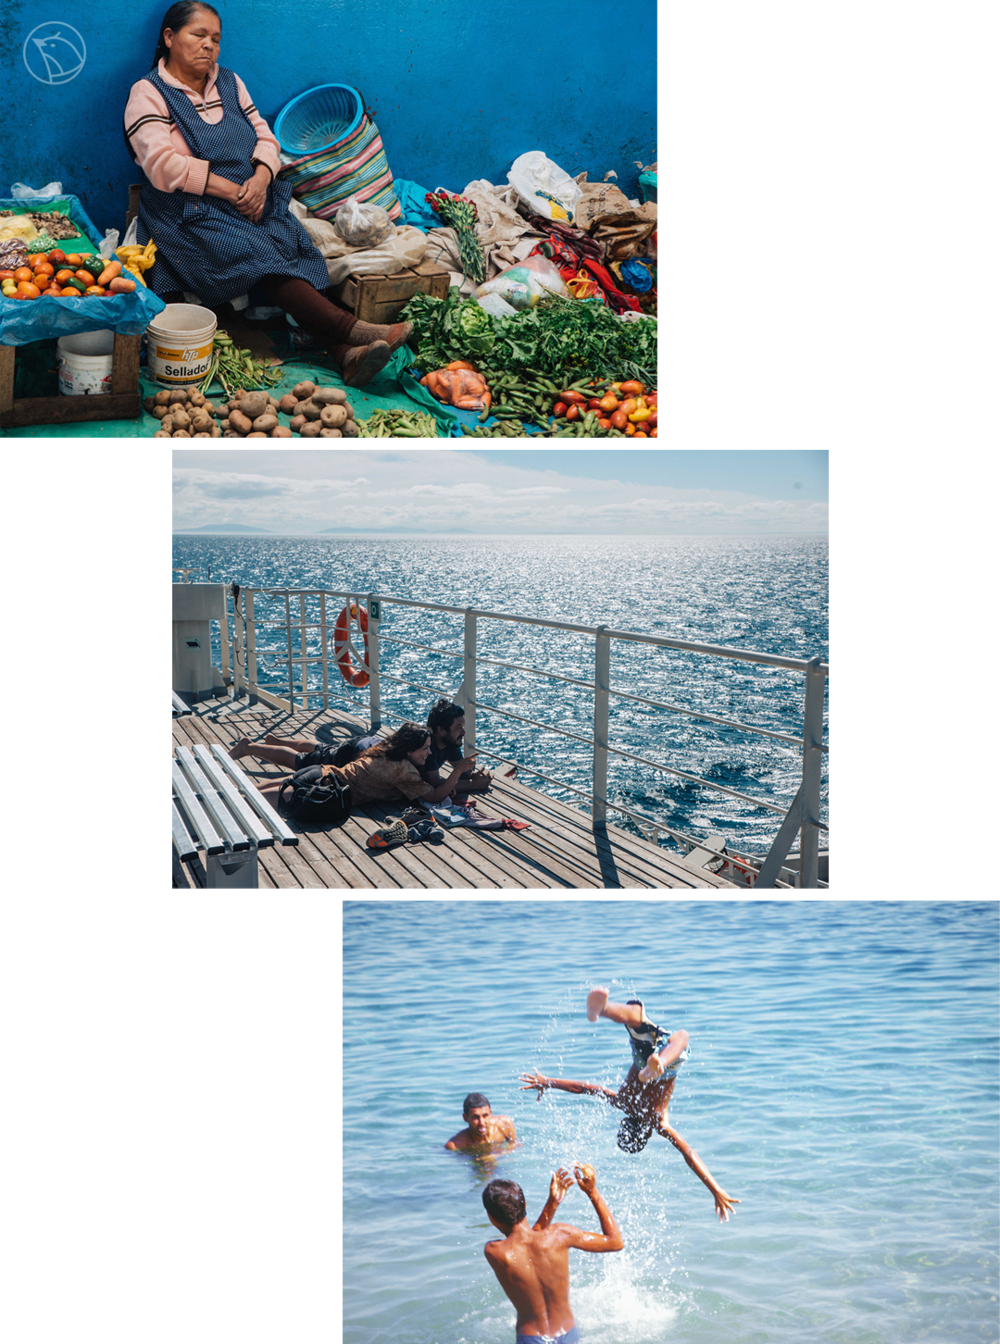   上图：秘鲁午休的卖菜阿姨；中图：智利轮渡上的一对情侣；下图：埃及戏水的孩子<br>